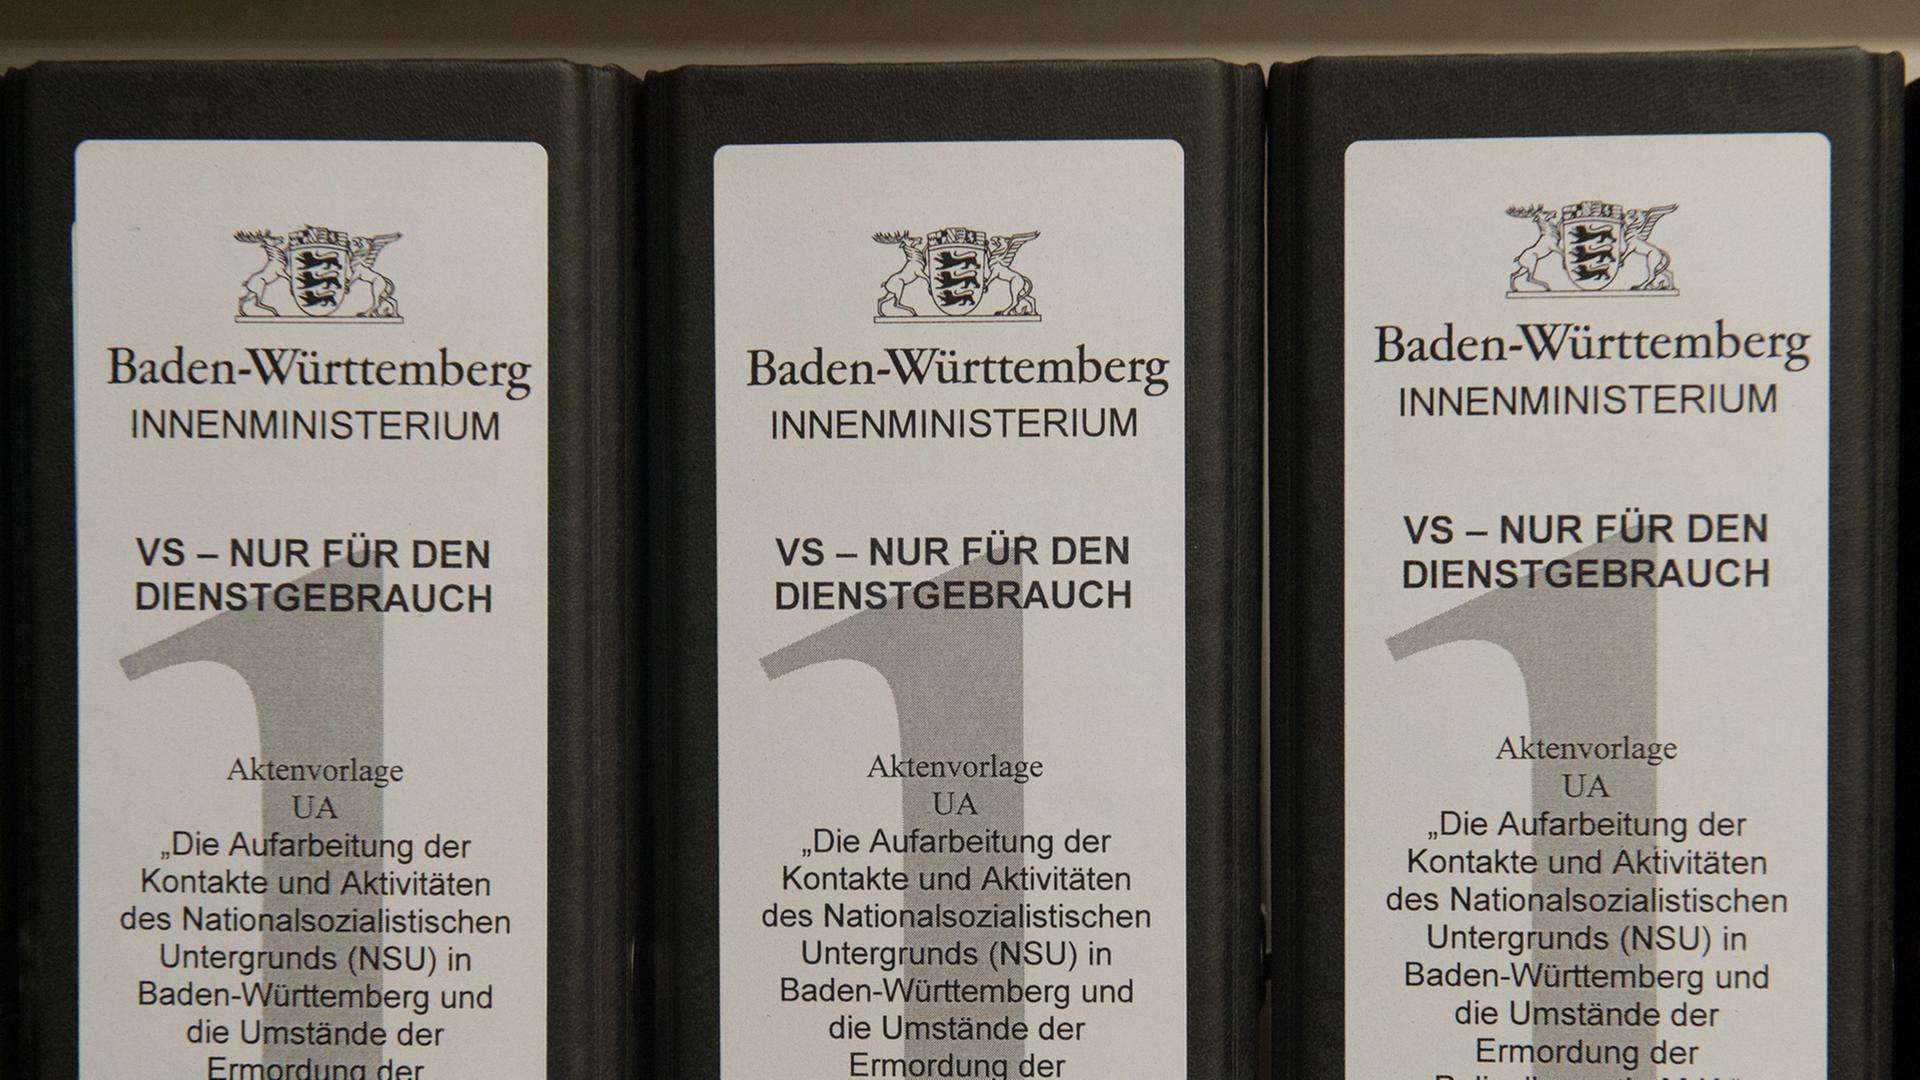 Ordner zum Untersuchungsausschuss "Rechtsterrorismus/NSU BW" des baden-württembergischen Landtags.